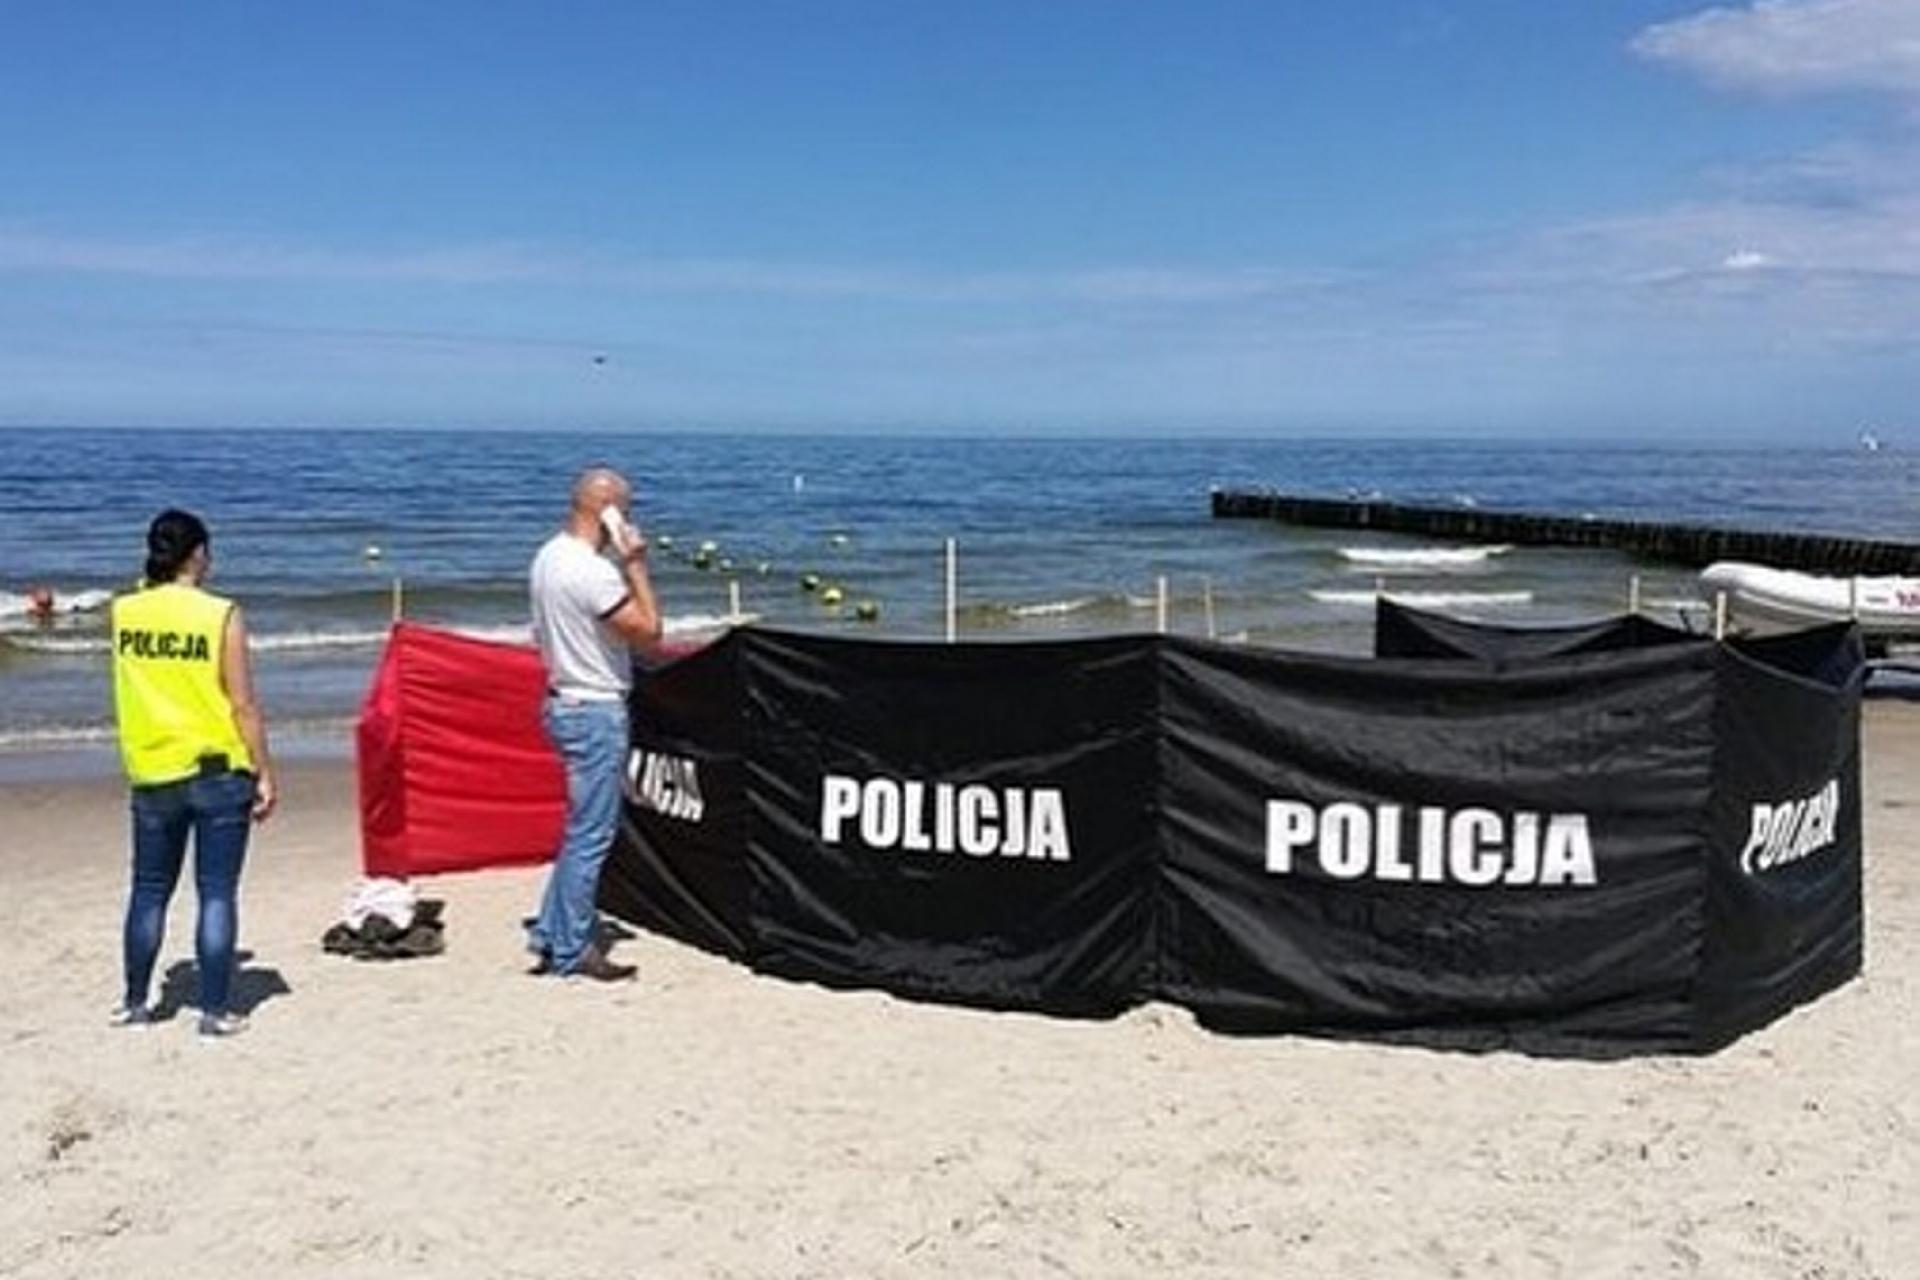 Tragedia Na Plaży W Stegnie Plażowicze Mają Obowiązki Jak Kierowcy Policjantka Grzmi I 2816